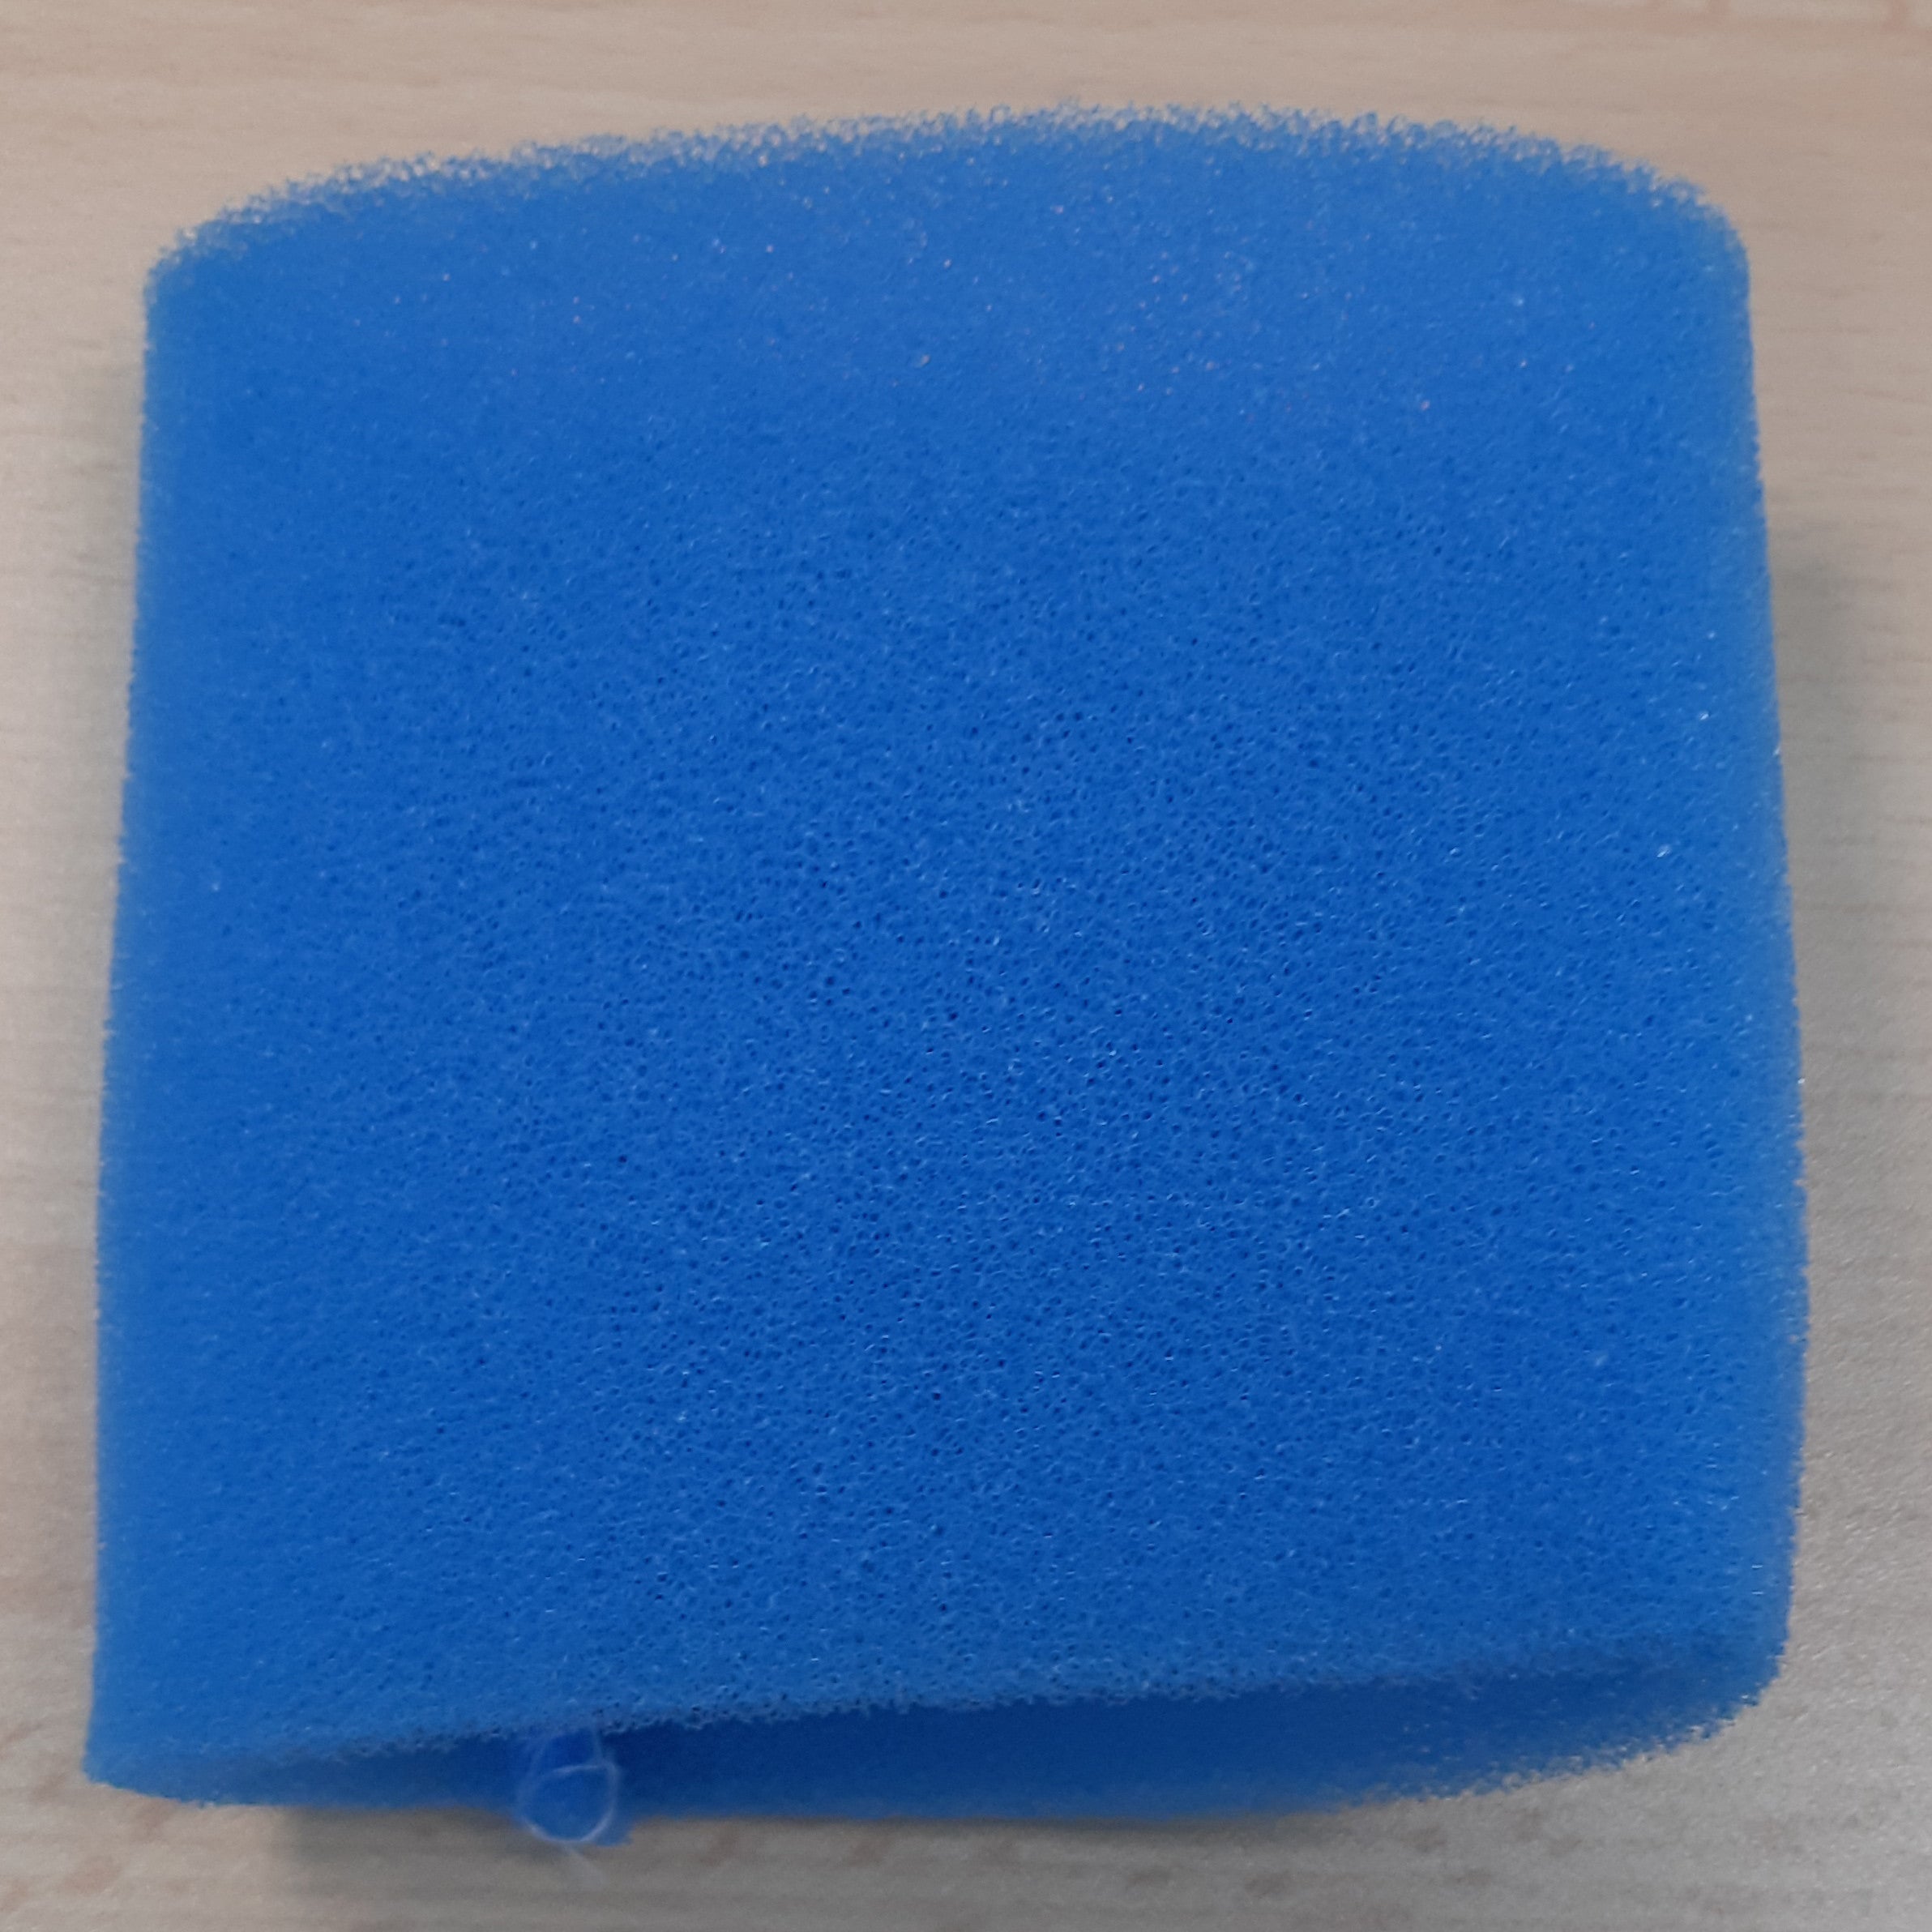 Zz-filtro azzurro x bidone aspiratutto lavor joker 1400s